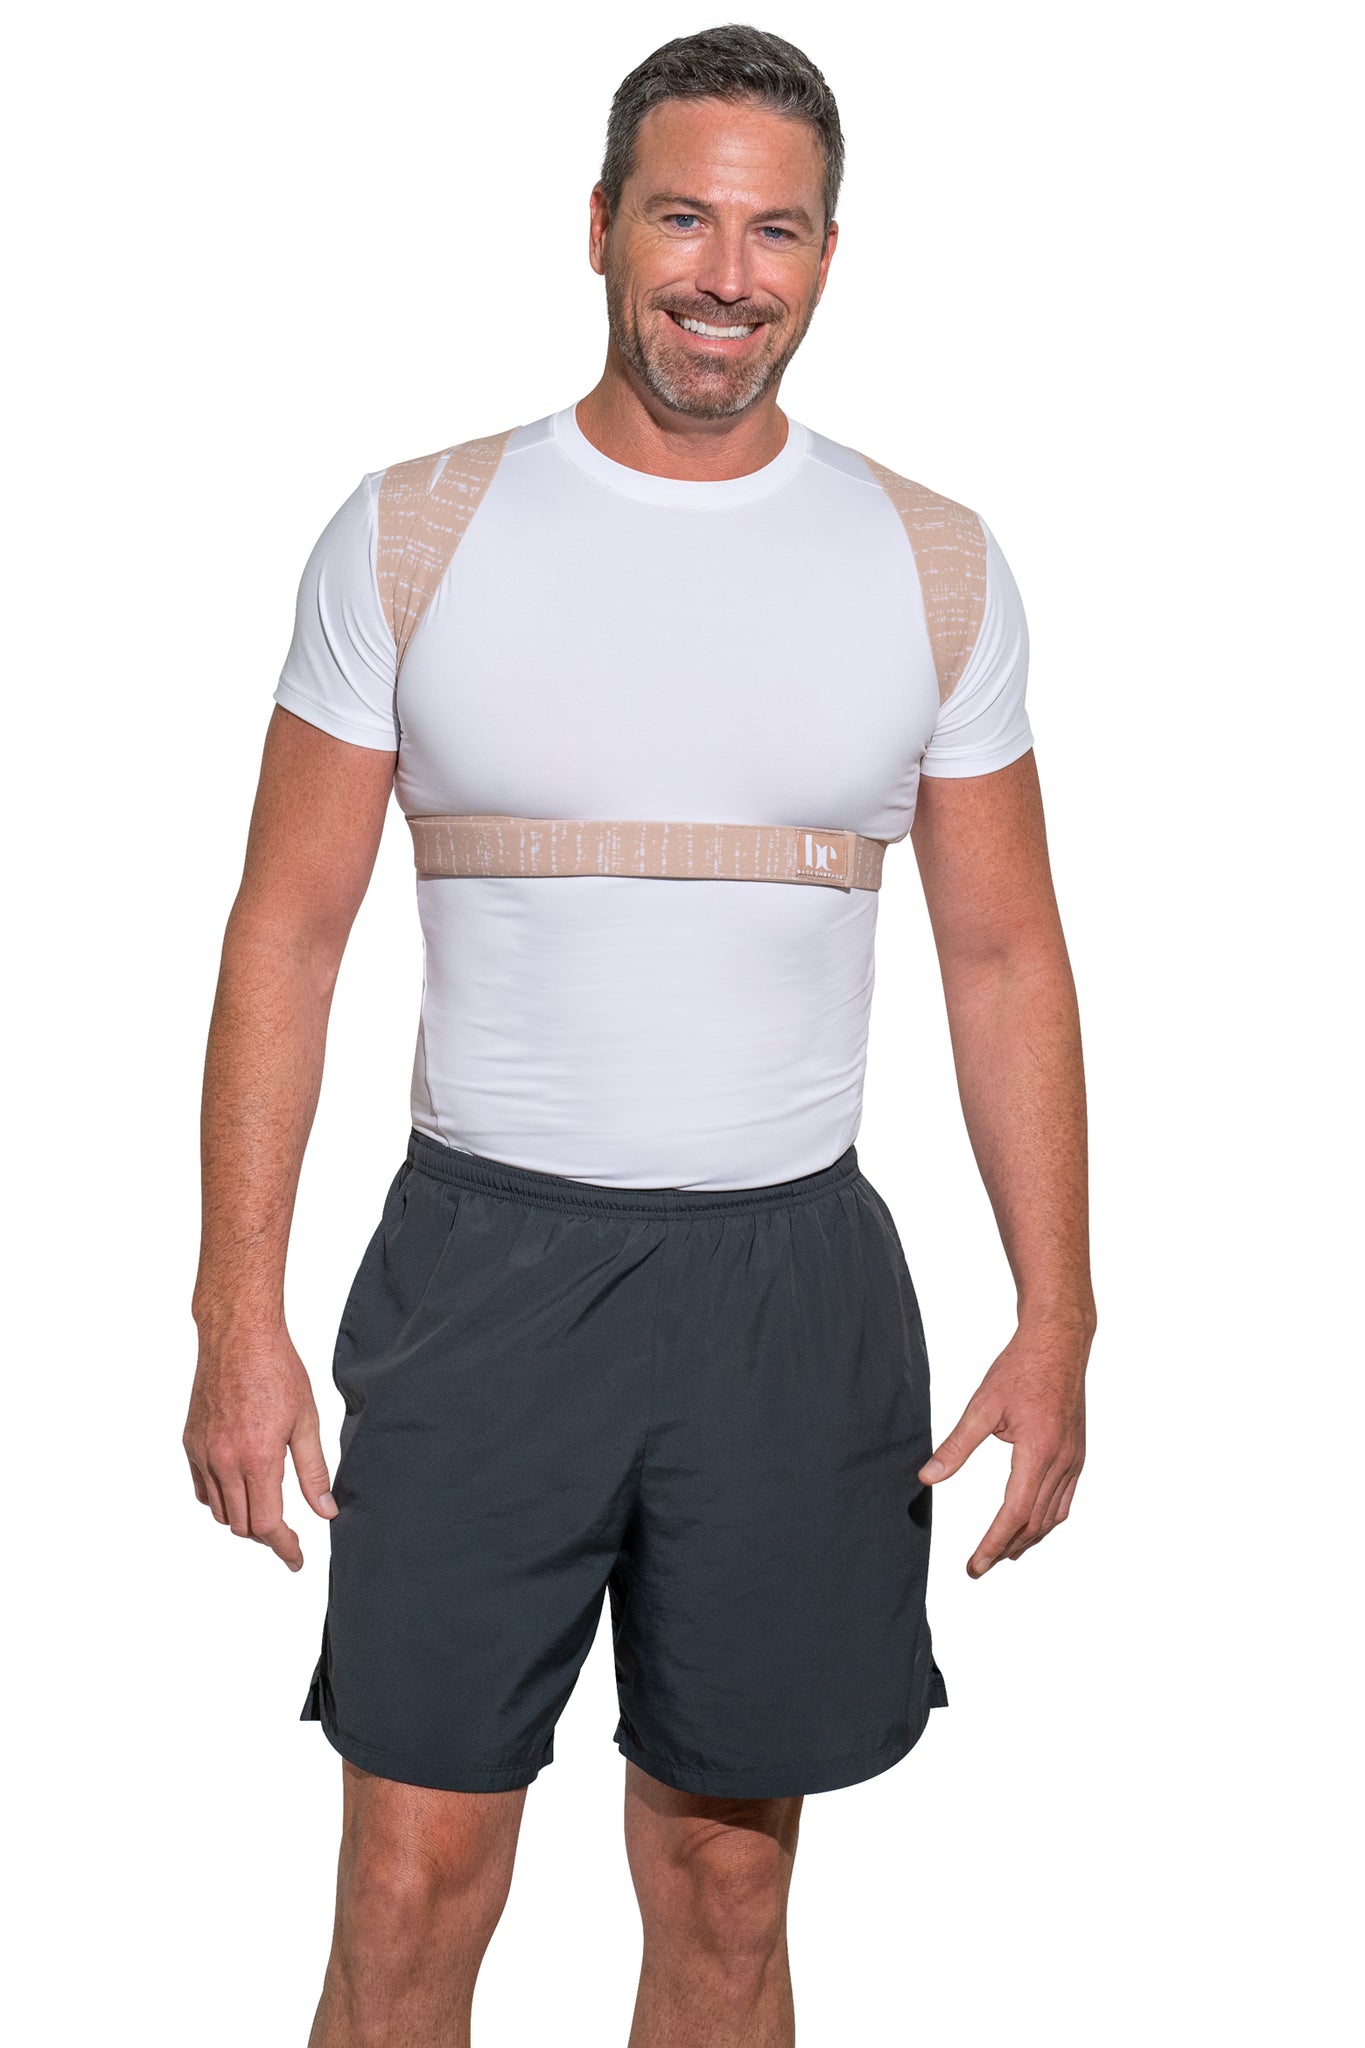 Back Shoulder Posture Corrector Belt Back Support Belt for Men